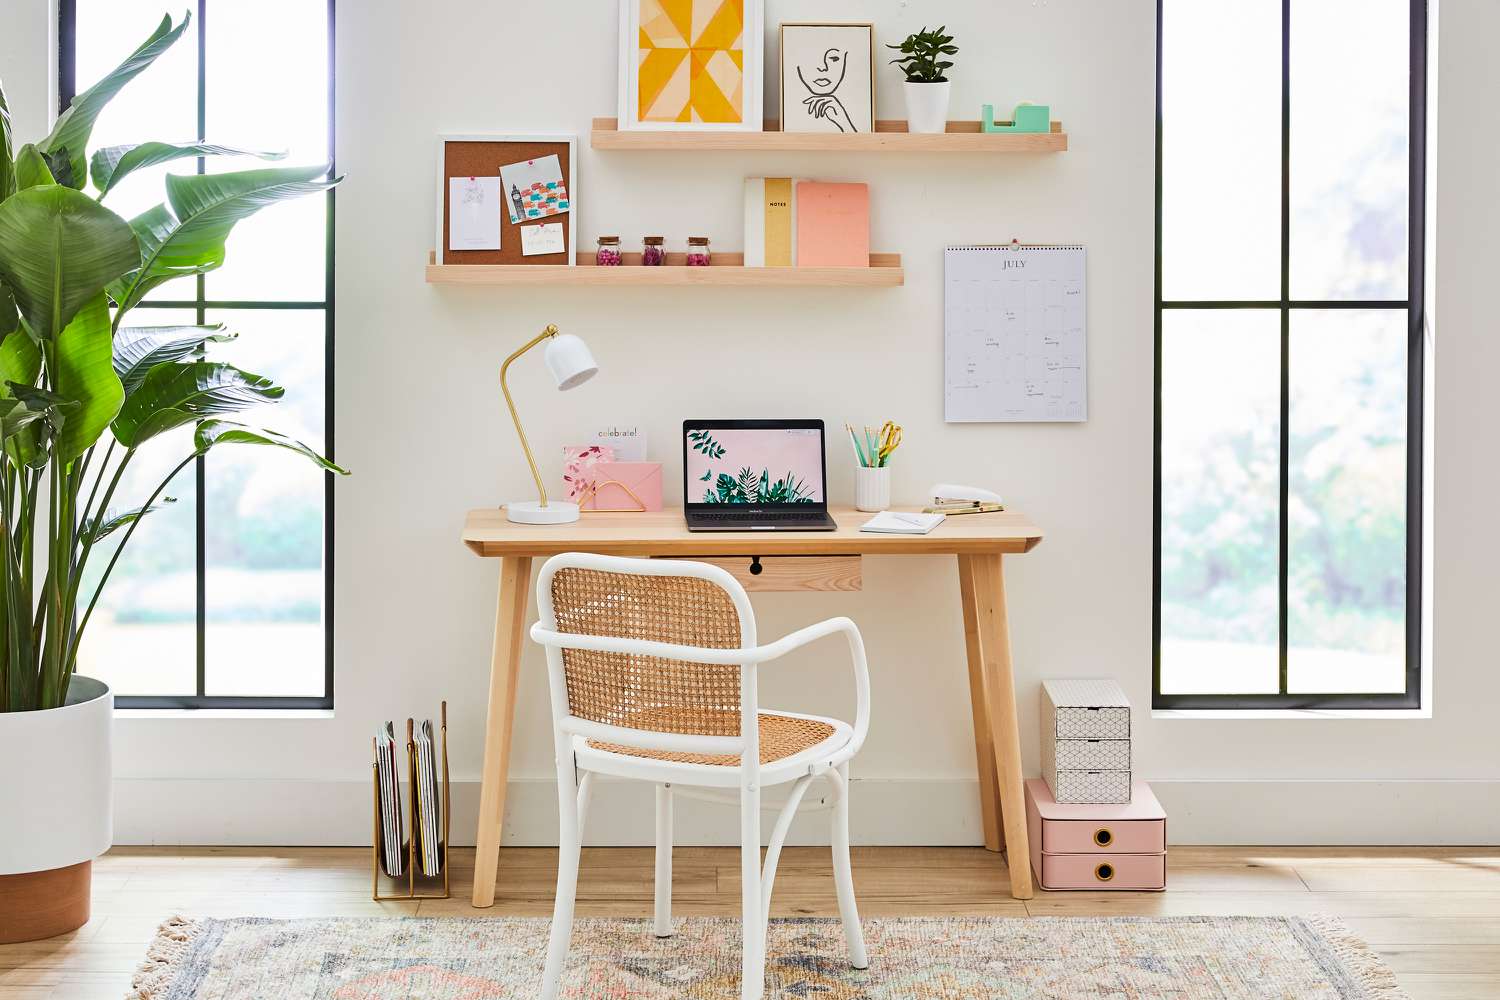 Home-Office-Bereich mit farbenfrohen Dekorationsartikeln auf Regalen